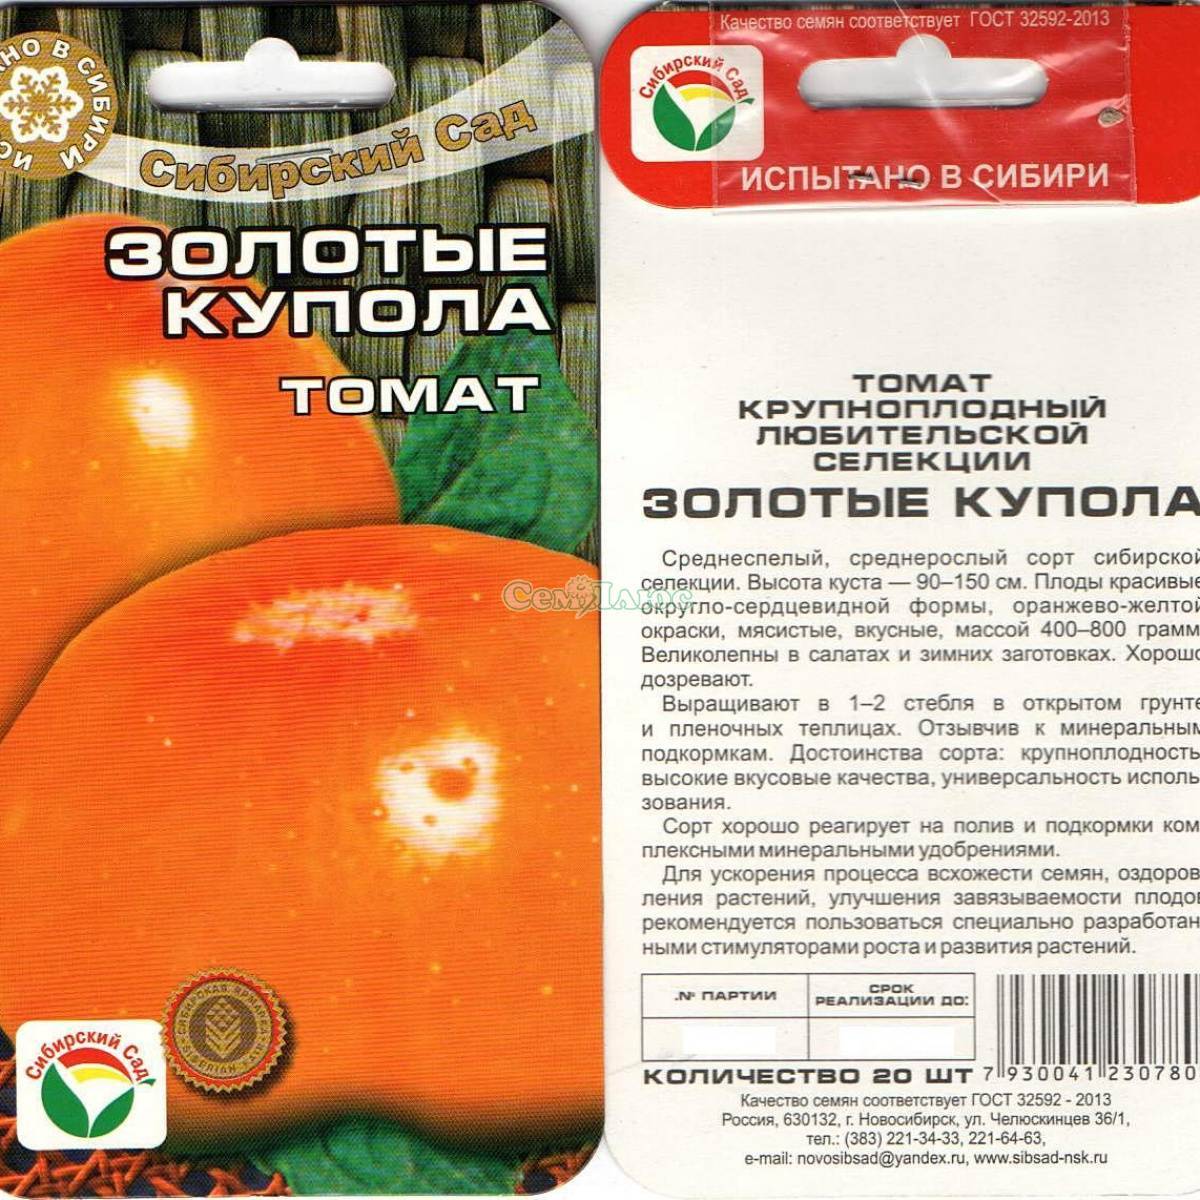 Описание и характеристики сорта томатов Золотые купола, урожайность и выращивание